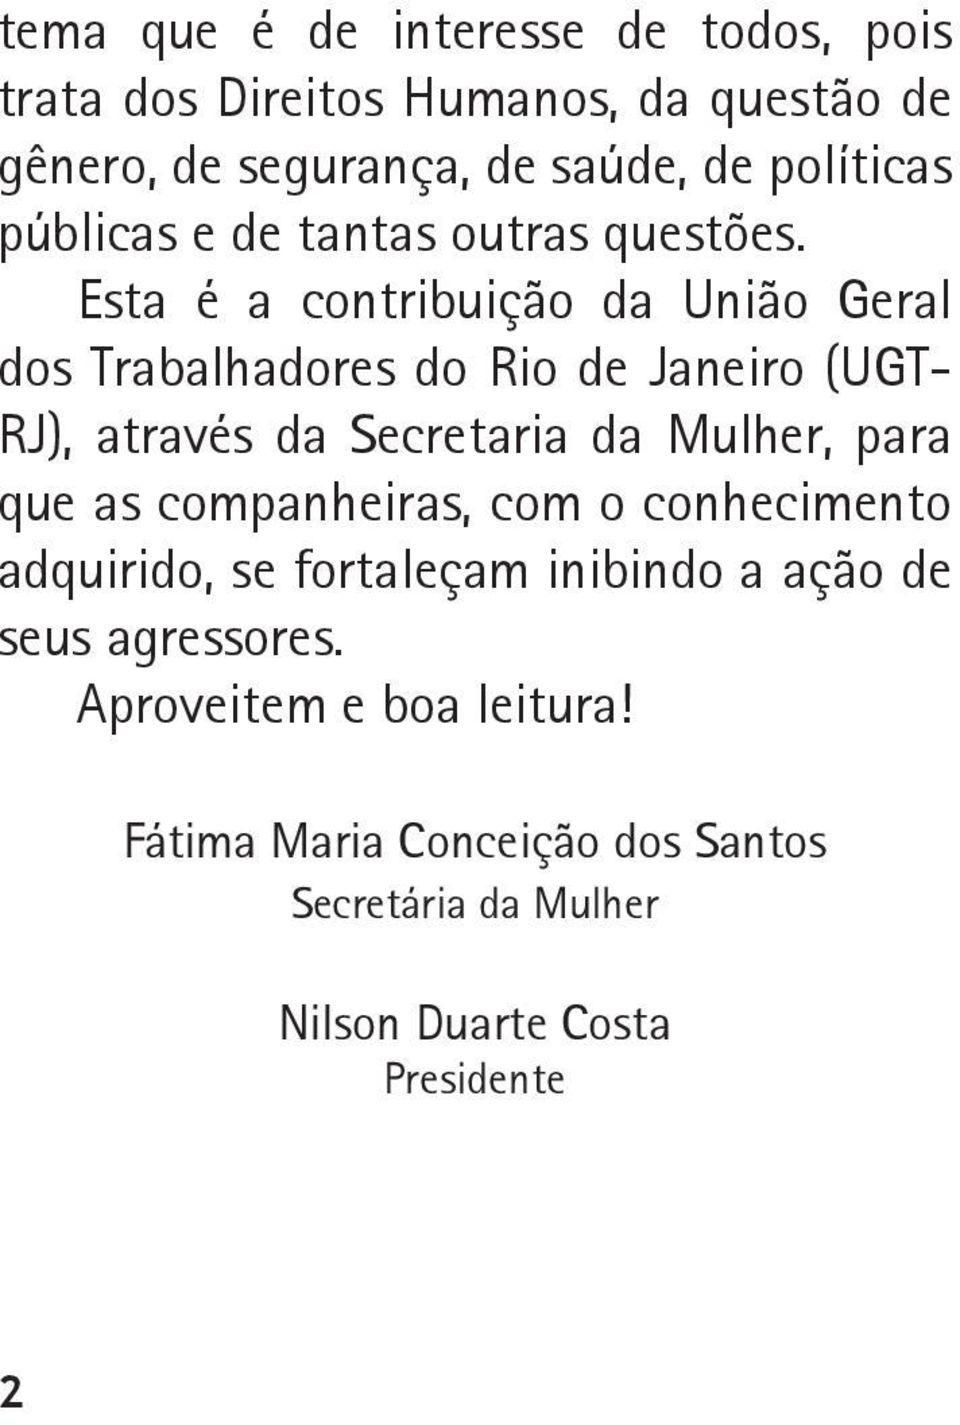 Esta é a contribuição da União Geral dos Trabalhadores do Rio de Janeiro (UGT- RJ), através da Secretaria da Mulher, para